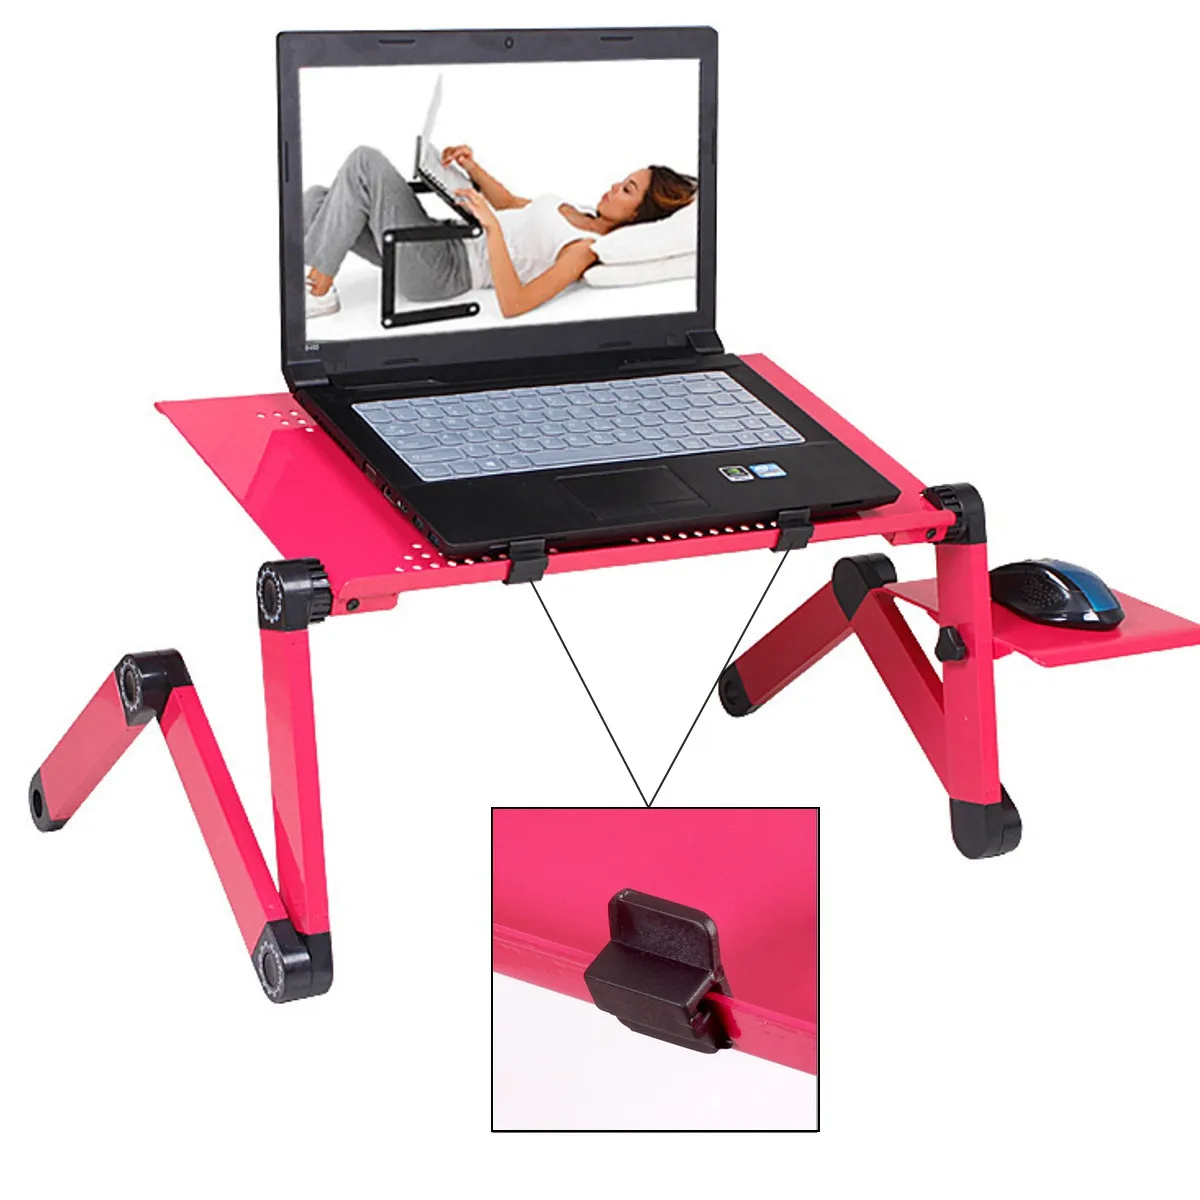 

Стол для ноутбука Регулируемый, портативный складной столик-поднос для ноутбука до 17 дюймов, с охлаждающим вентилятором и ковриком для мыши